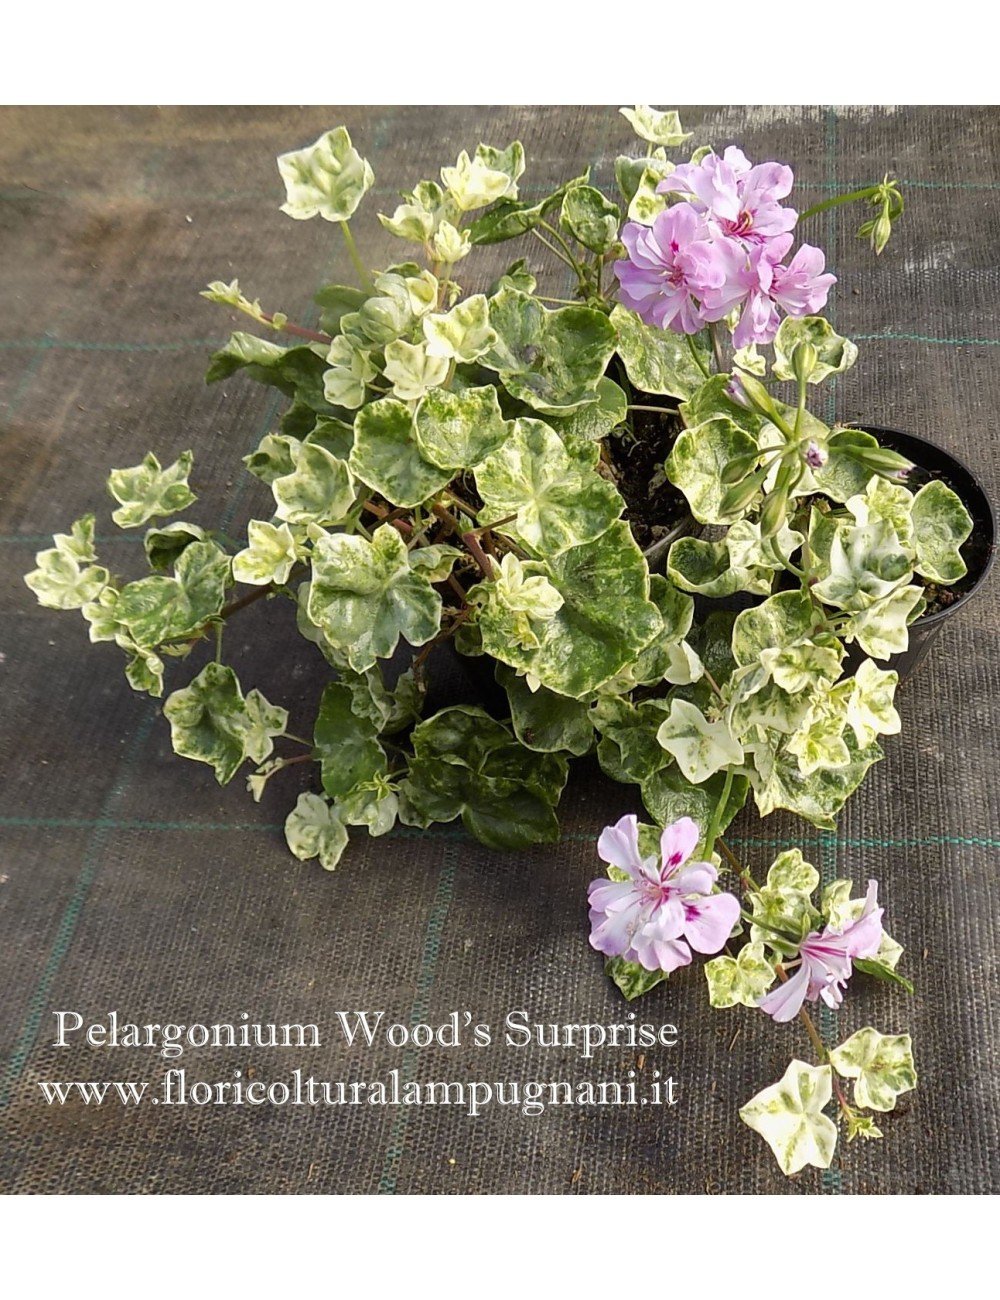 Pelargonium Wood Surprise